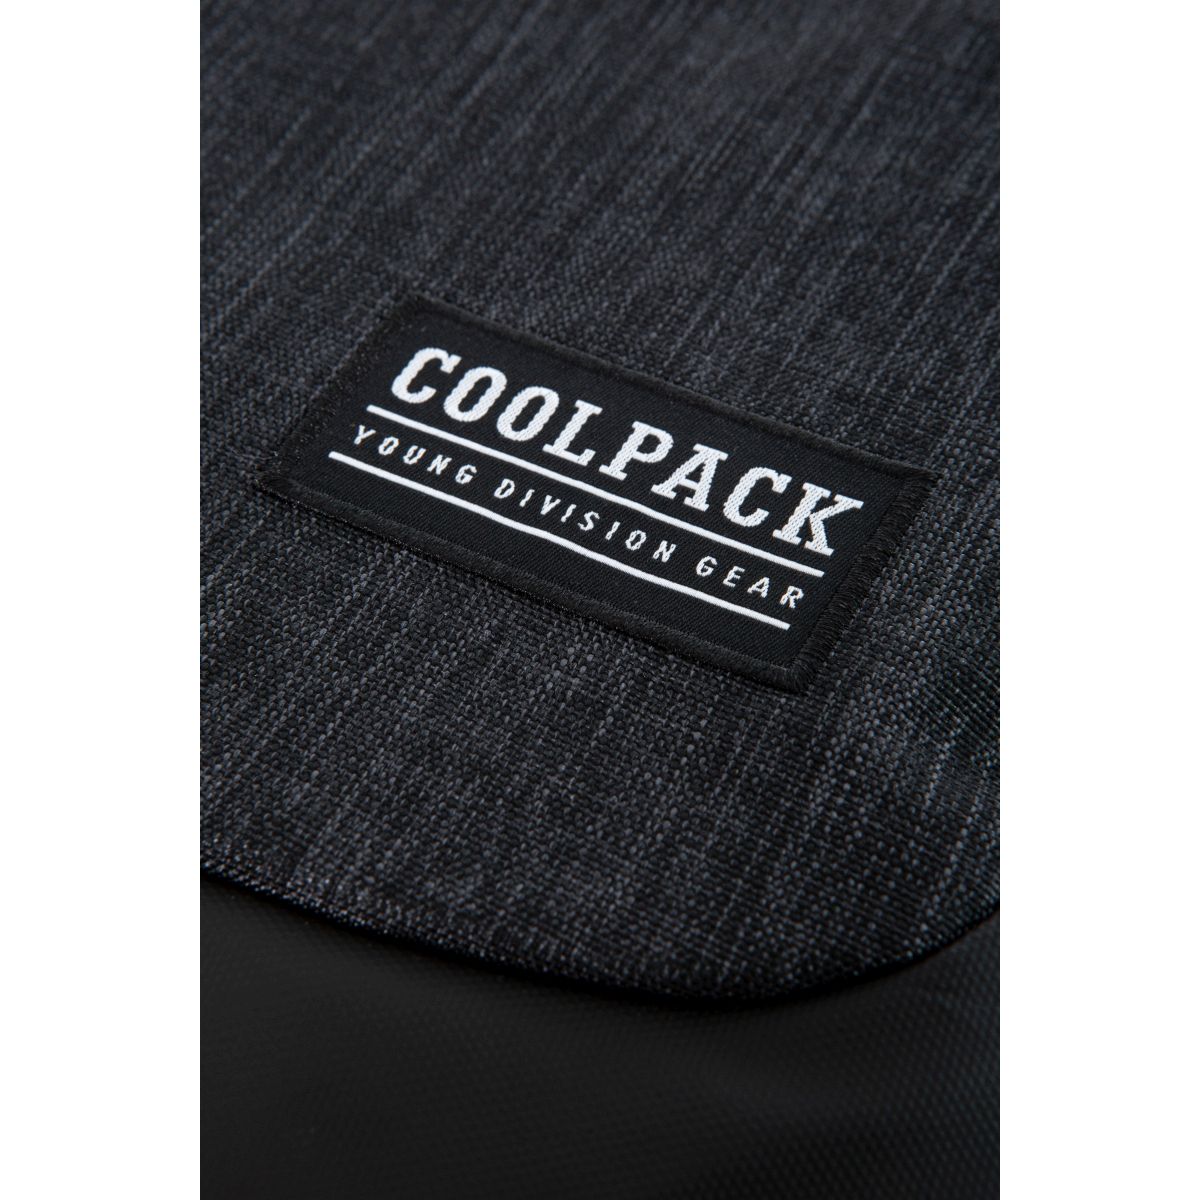 Plecak Patio cool pack SOUL (C10164)